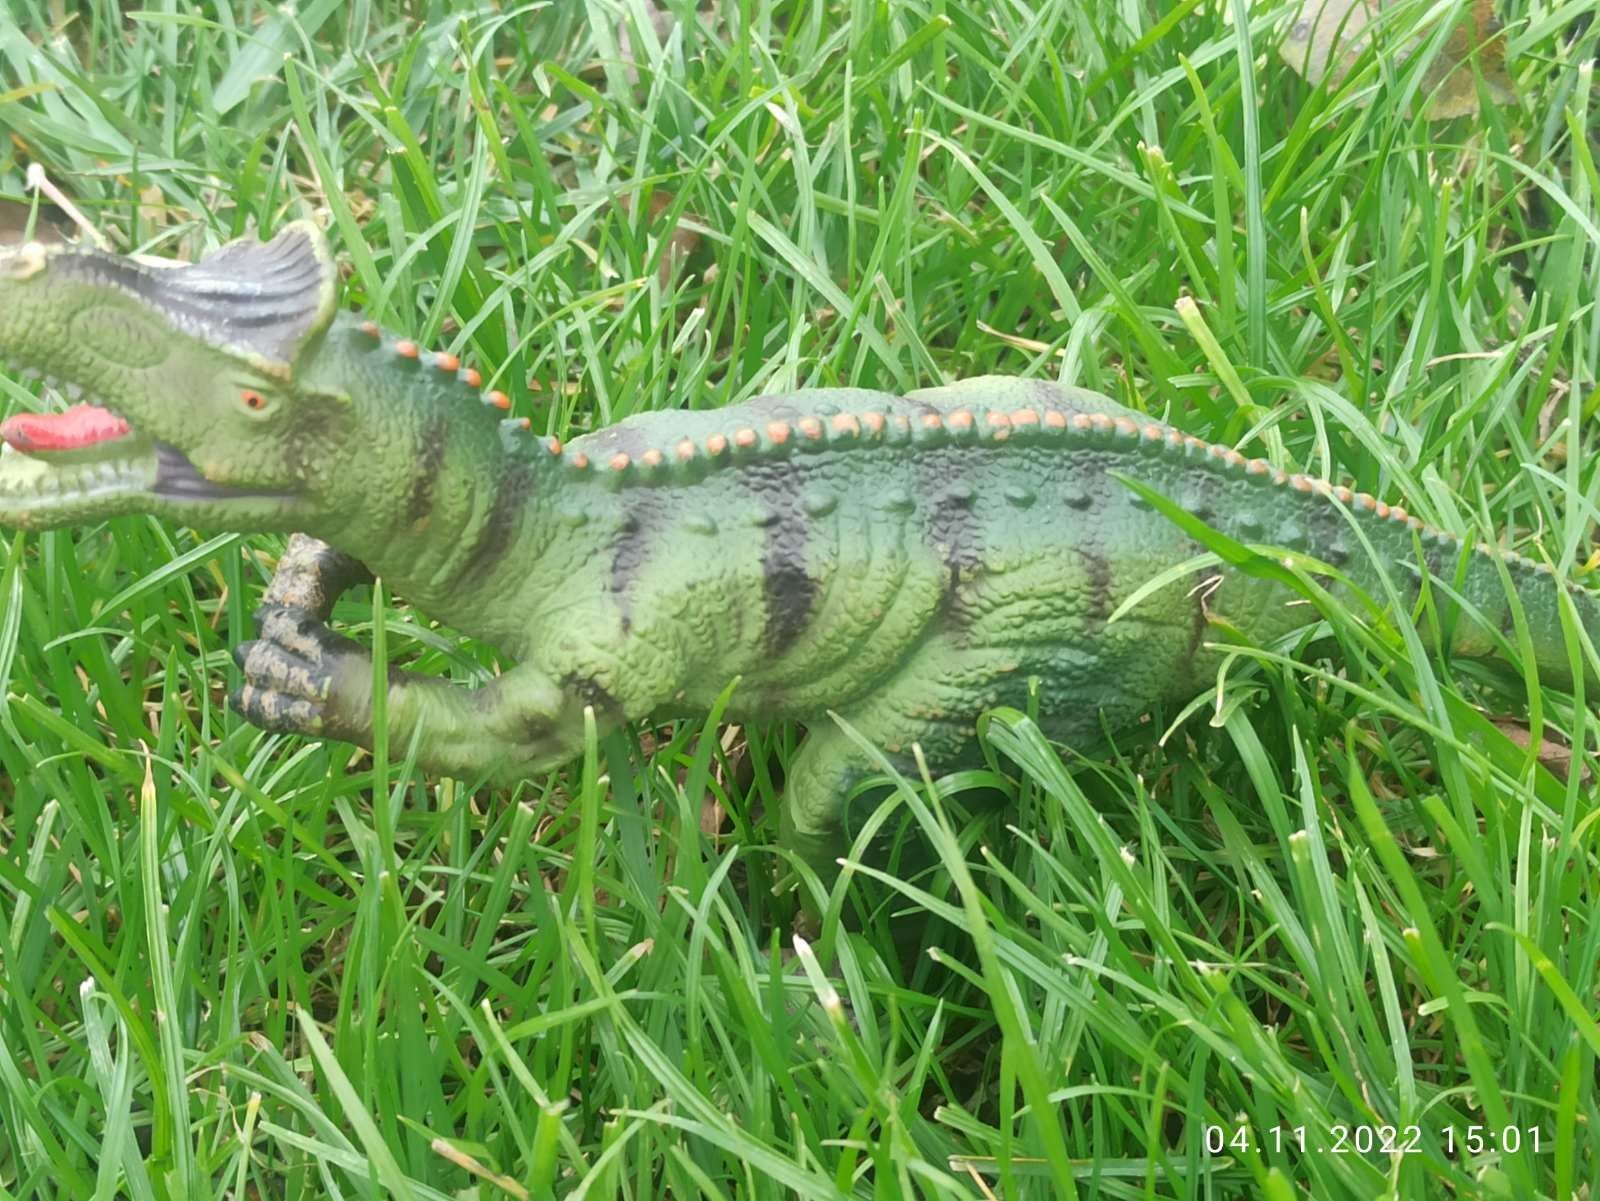 Фігурка мягкая ZJTДинозавр в асорт. Т-Рекс, Диплодок, Трицератопс